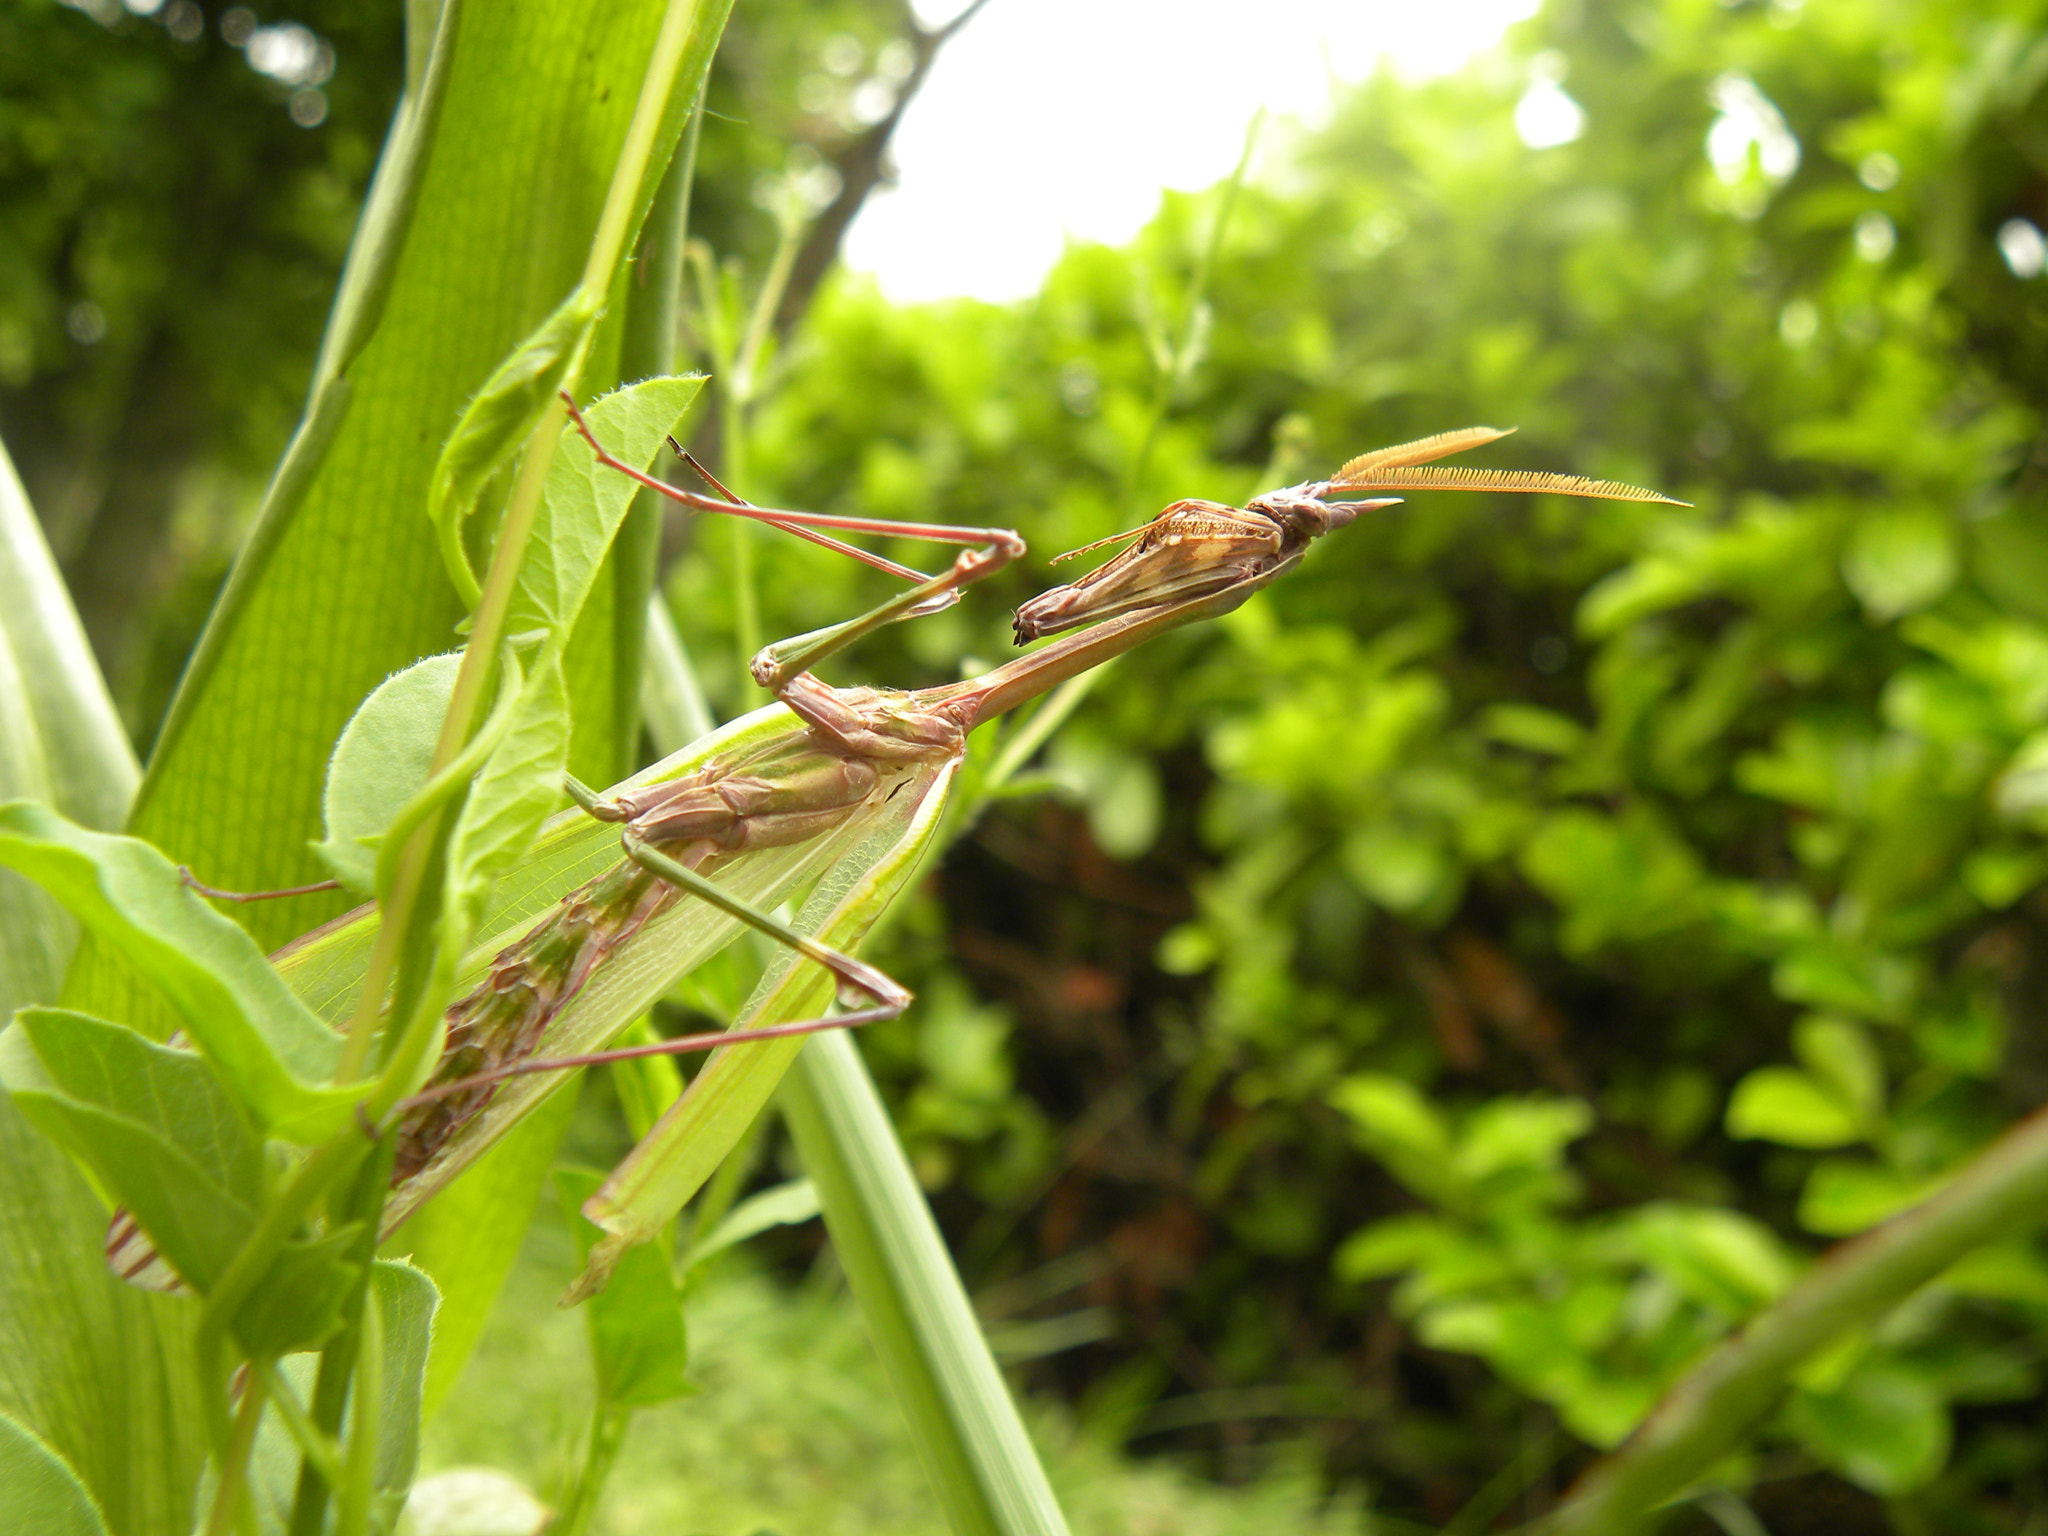 Nikon Coolpix P90 sample photo. Praying mantis photography